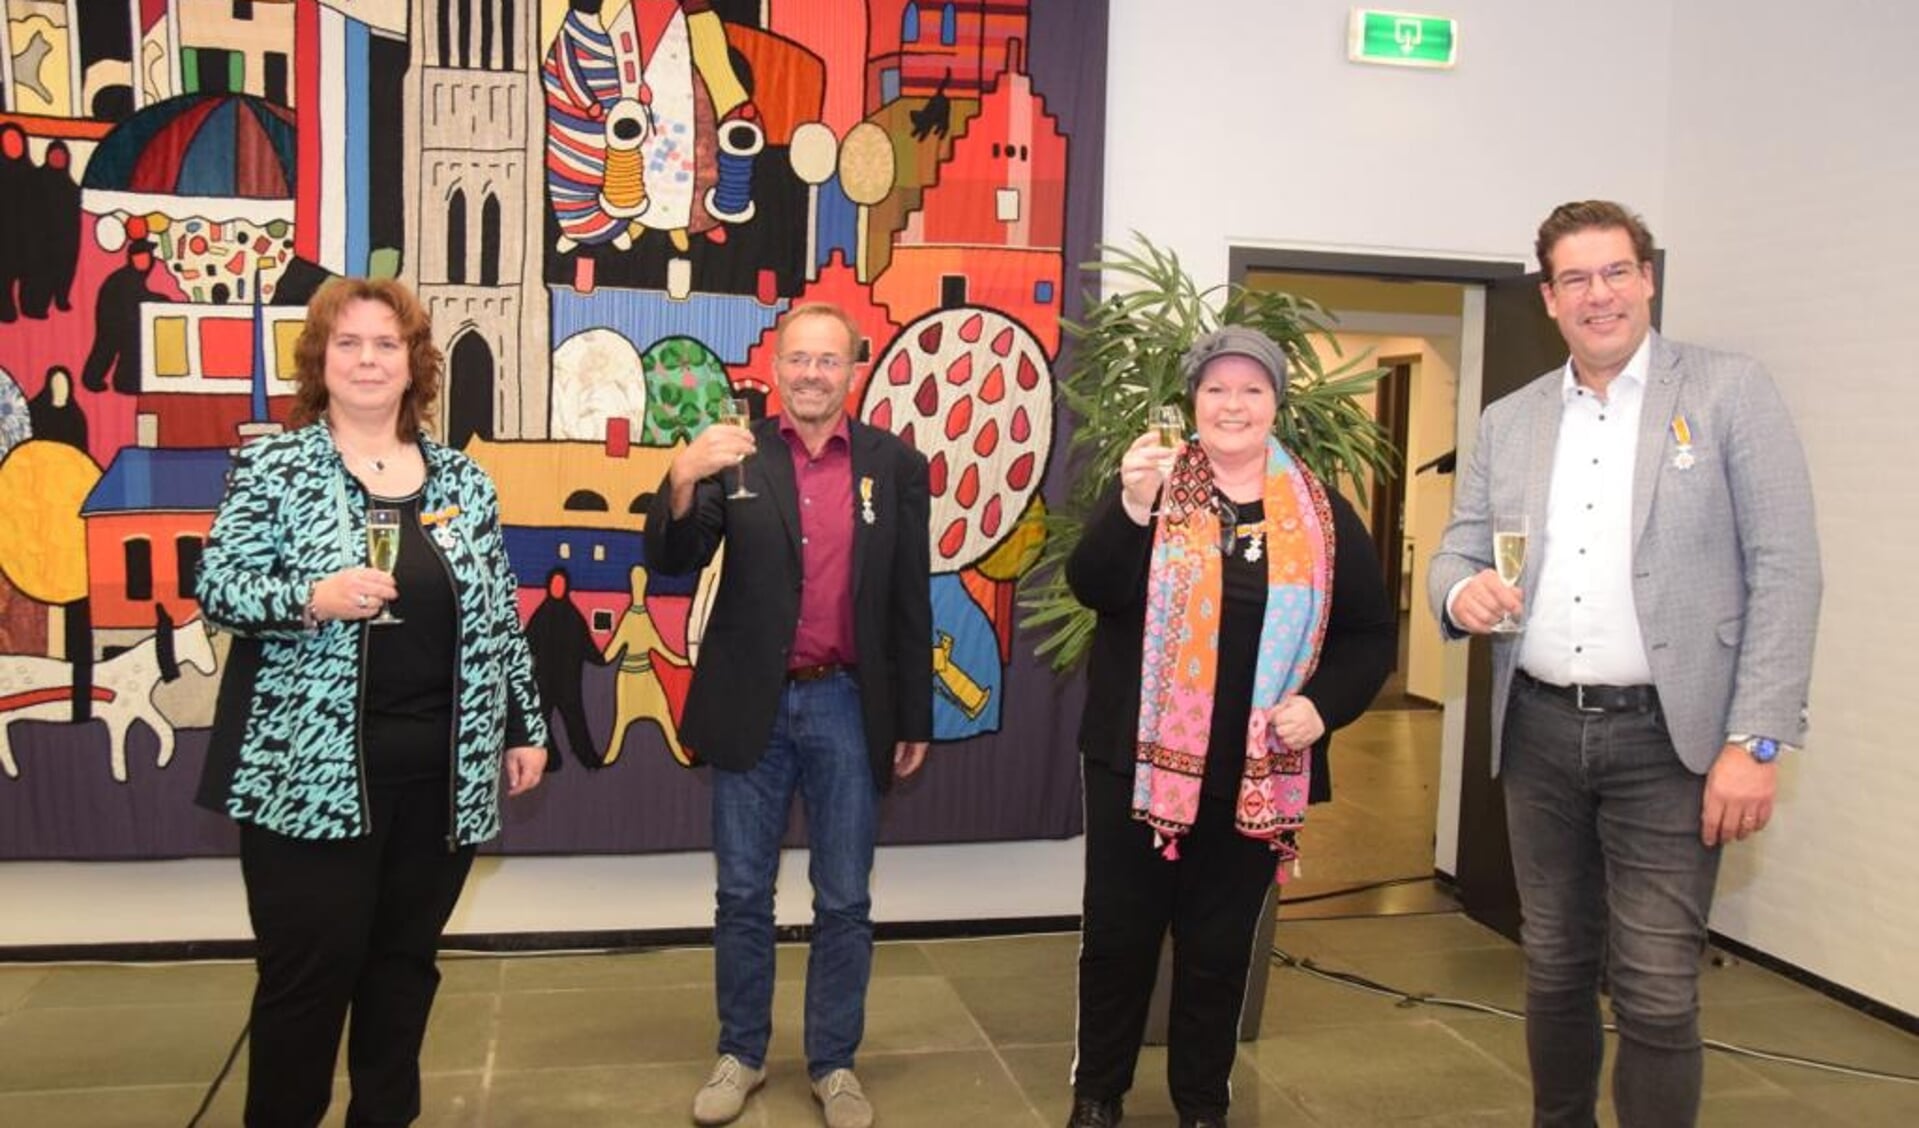 Vier raadsleden van de gemeente Mill en Sint Hubert ontvingen een lintje ter gelegenheid van hun afscheid in de raad.